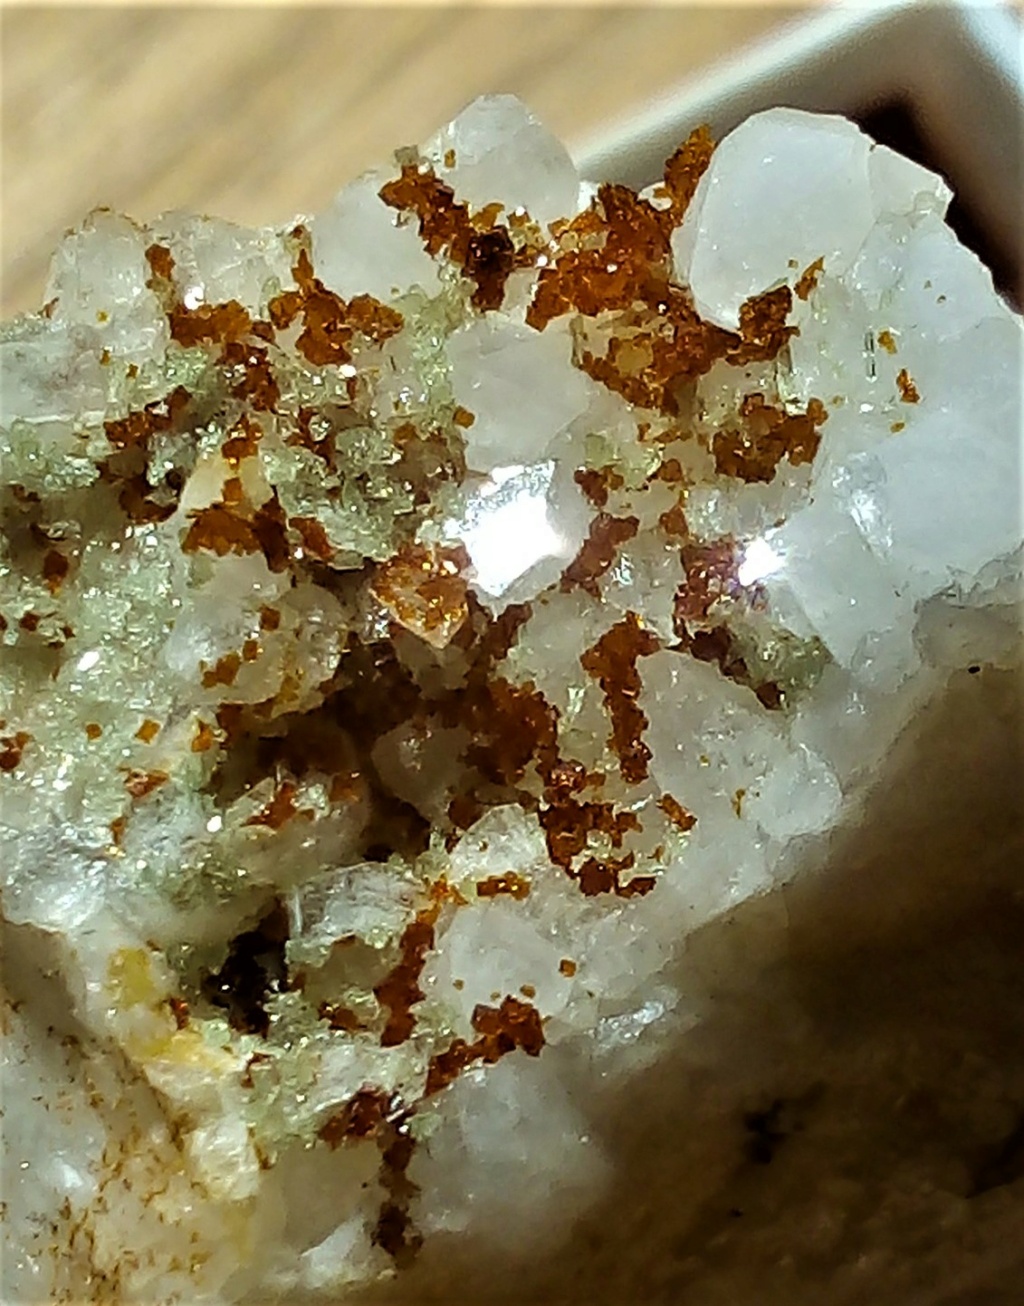 Minéraux de la mine CLARA autres que la Fluorite et la barite - Page 3 Img_2471